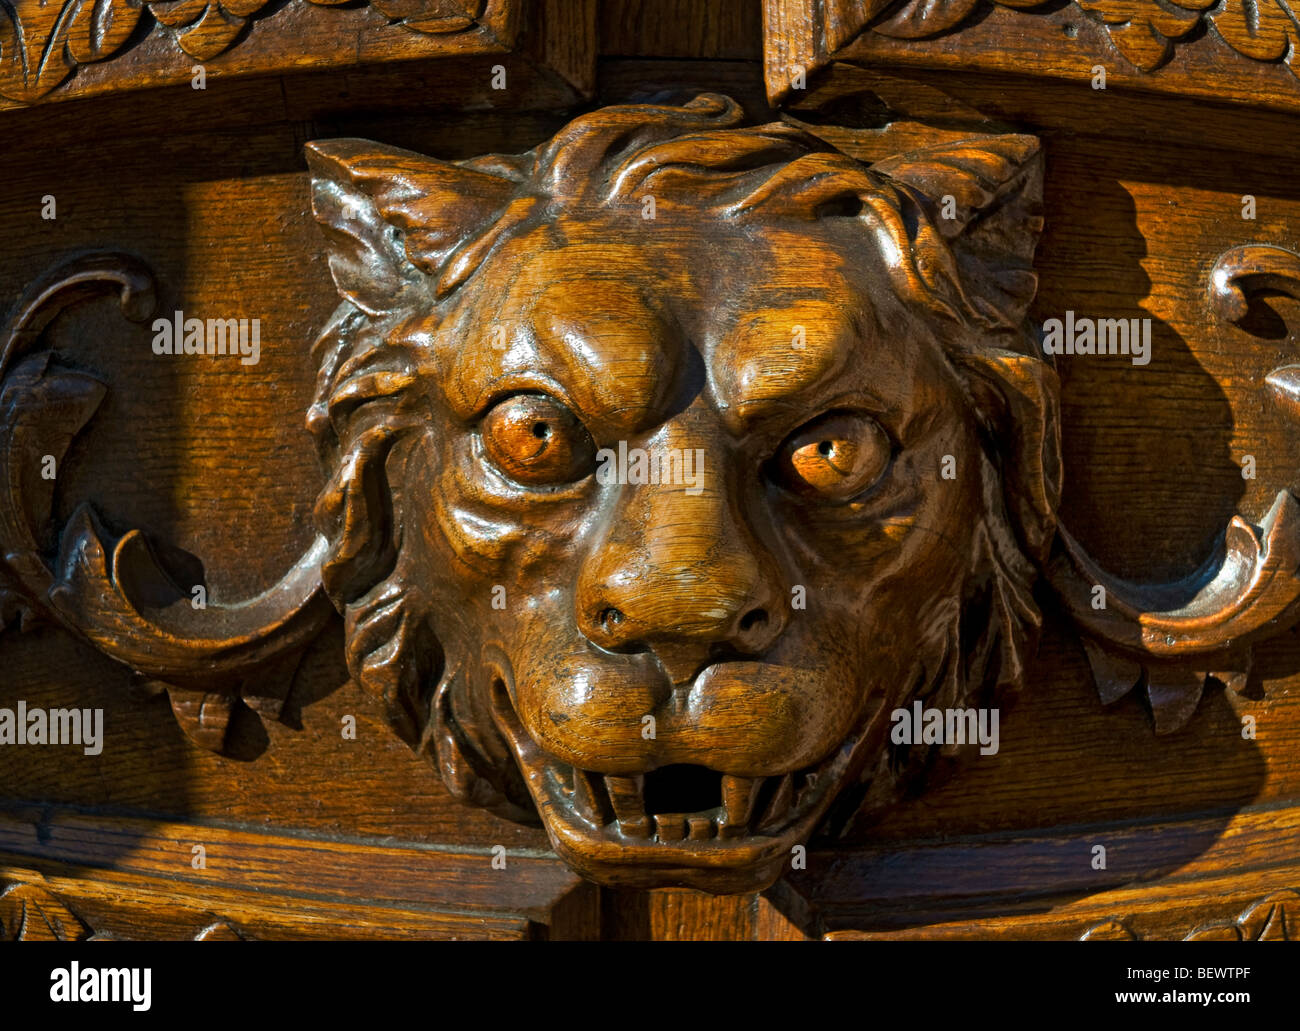 La sculpture ornée du lion féroce mythique en tant que gardienne de la grande porte d'entrée des bois Banque D'Images